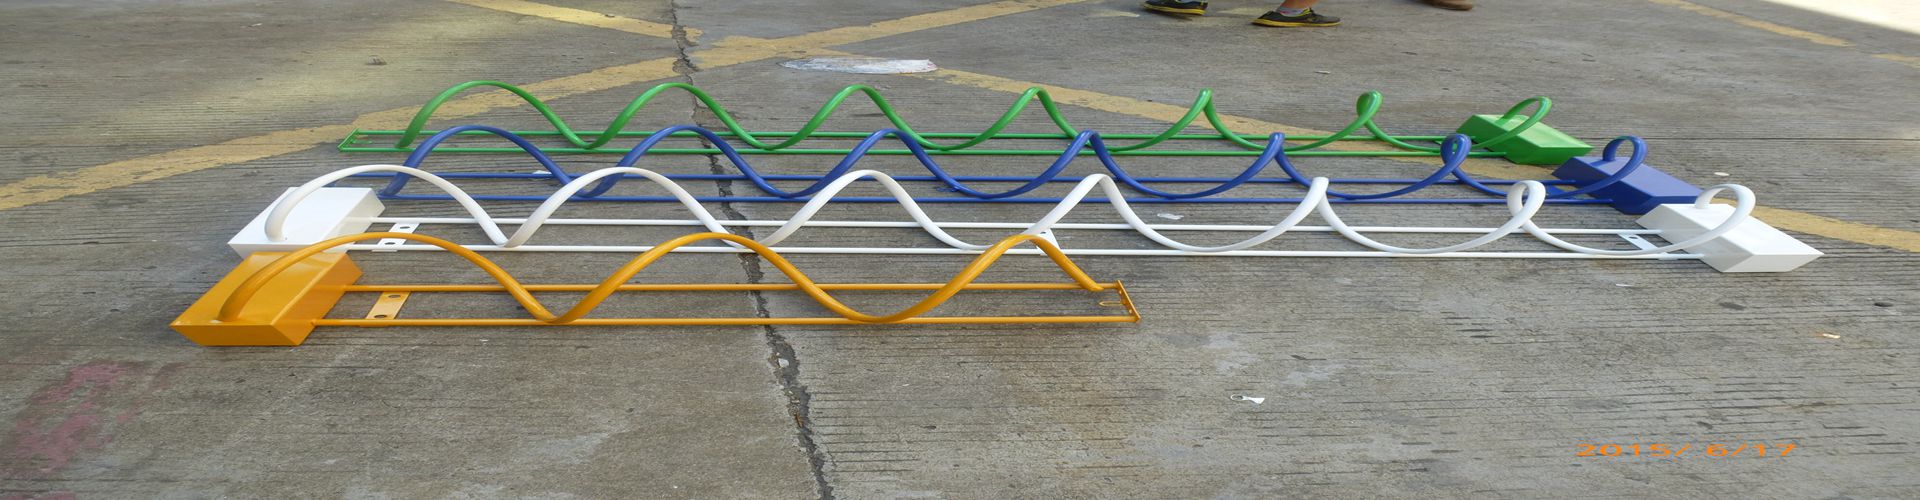 立体式自行车停车架图片